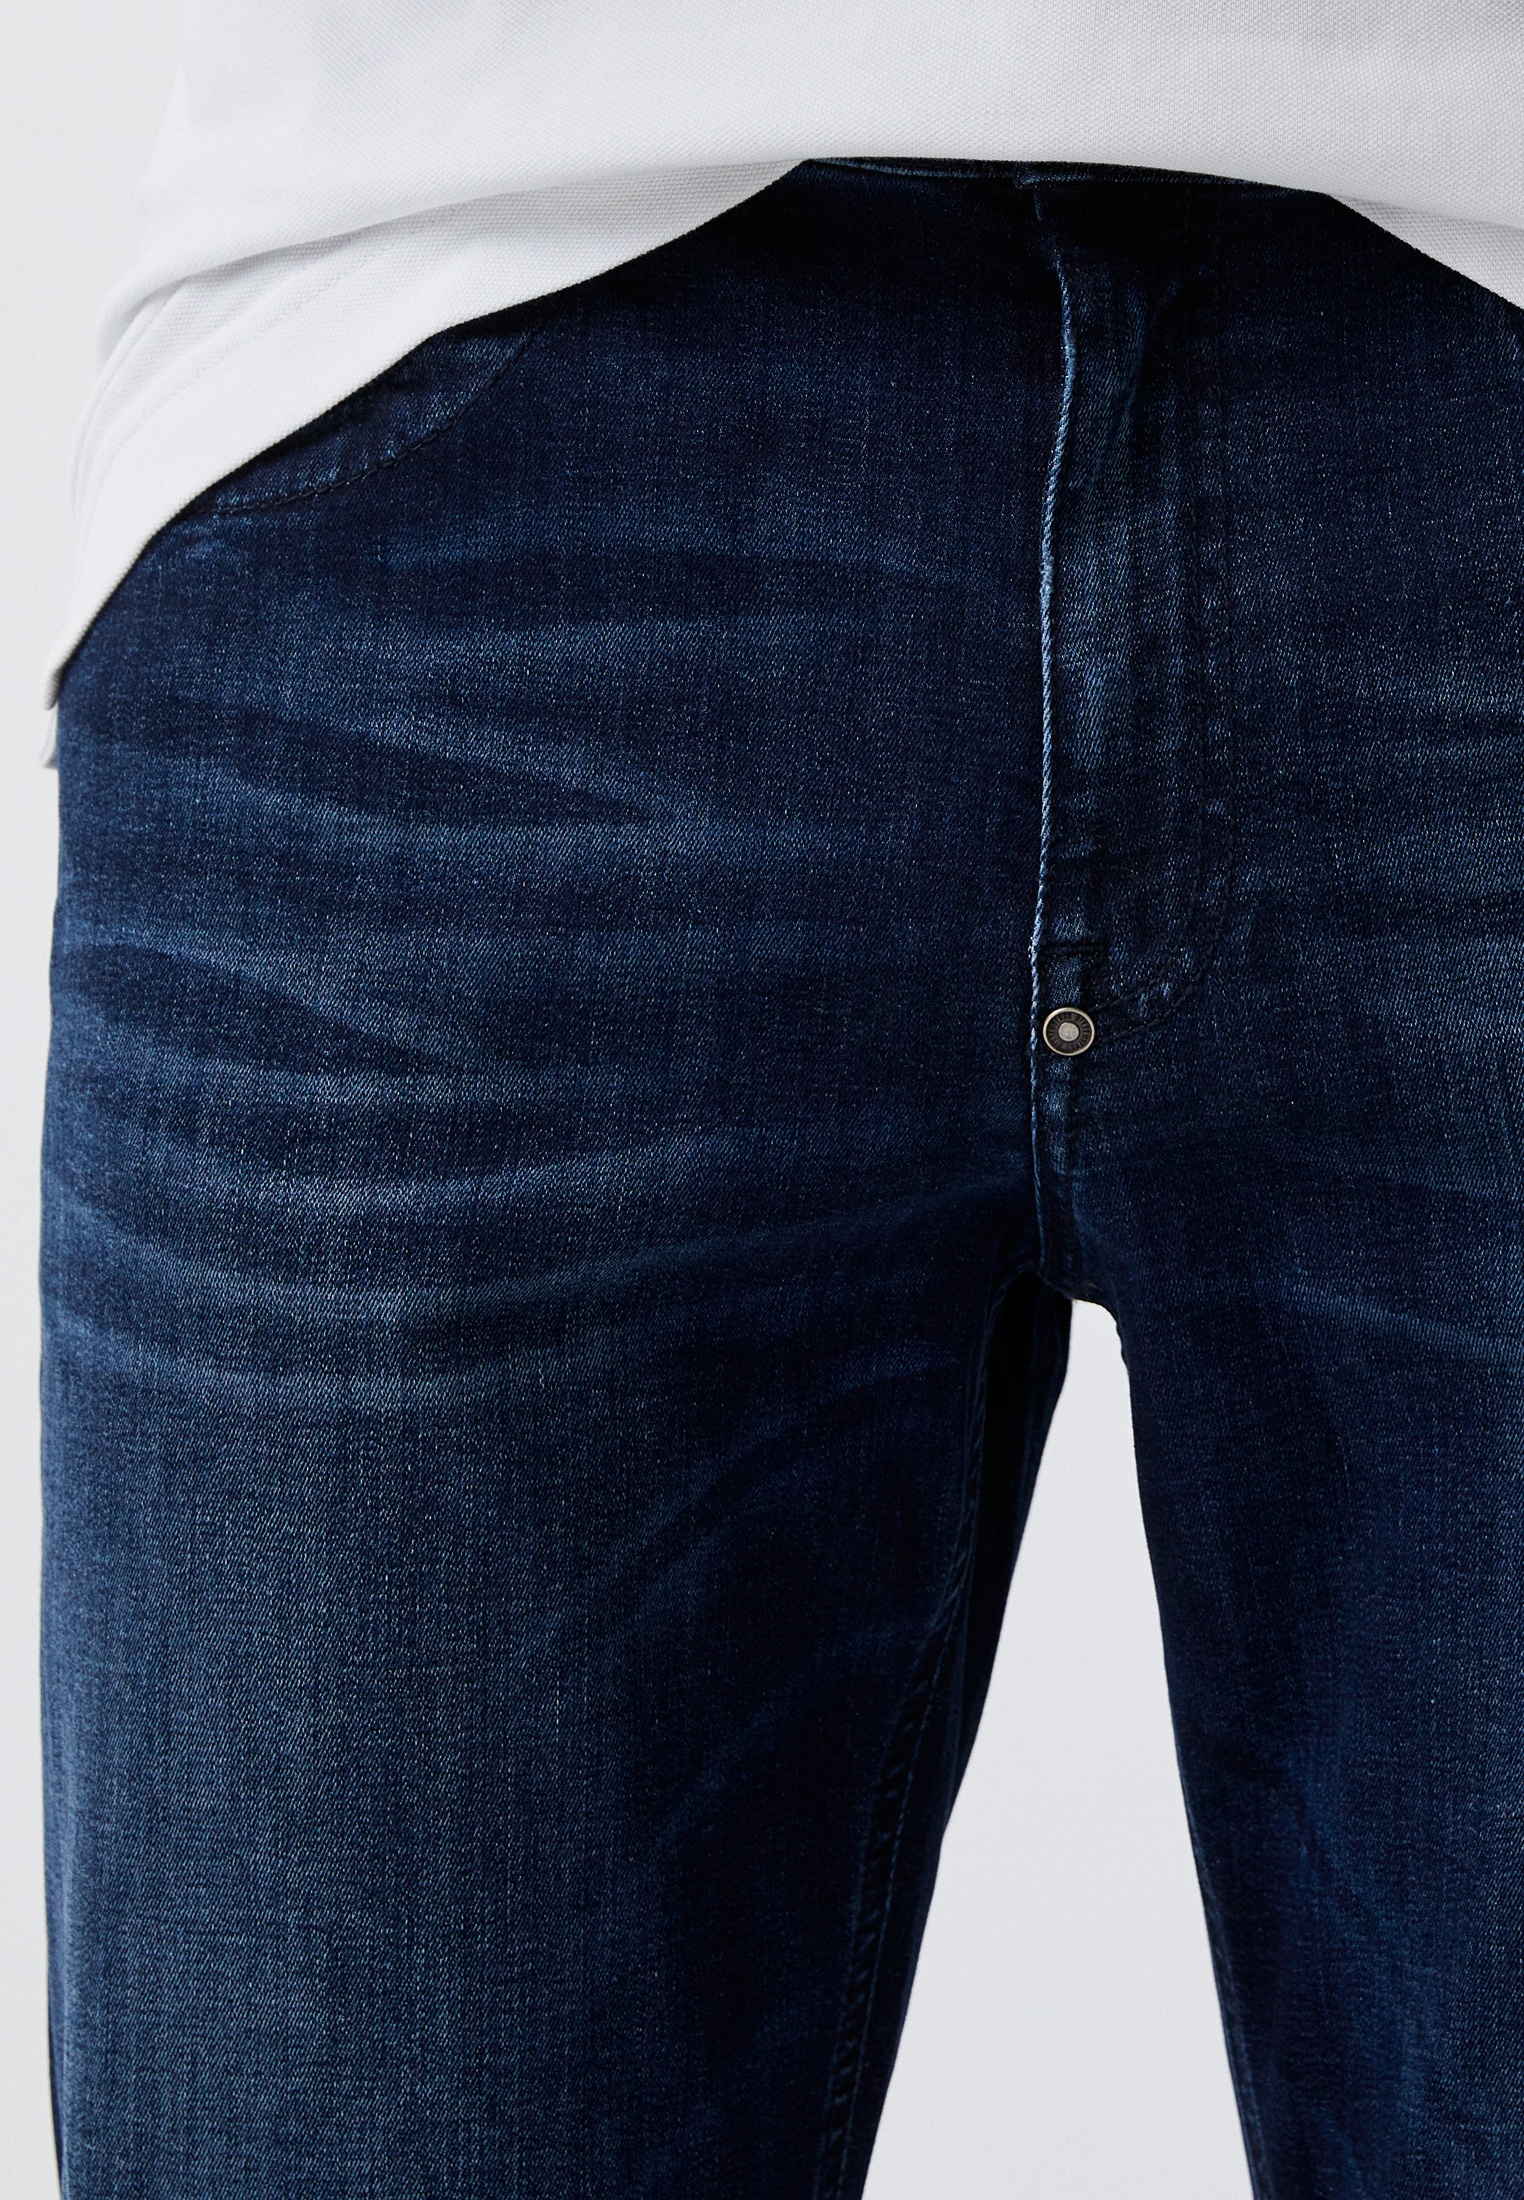 Мужские зауженные джинсы Bikkembergs (Биккембергс) C Q 112 01 S 3511: изображение 14